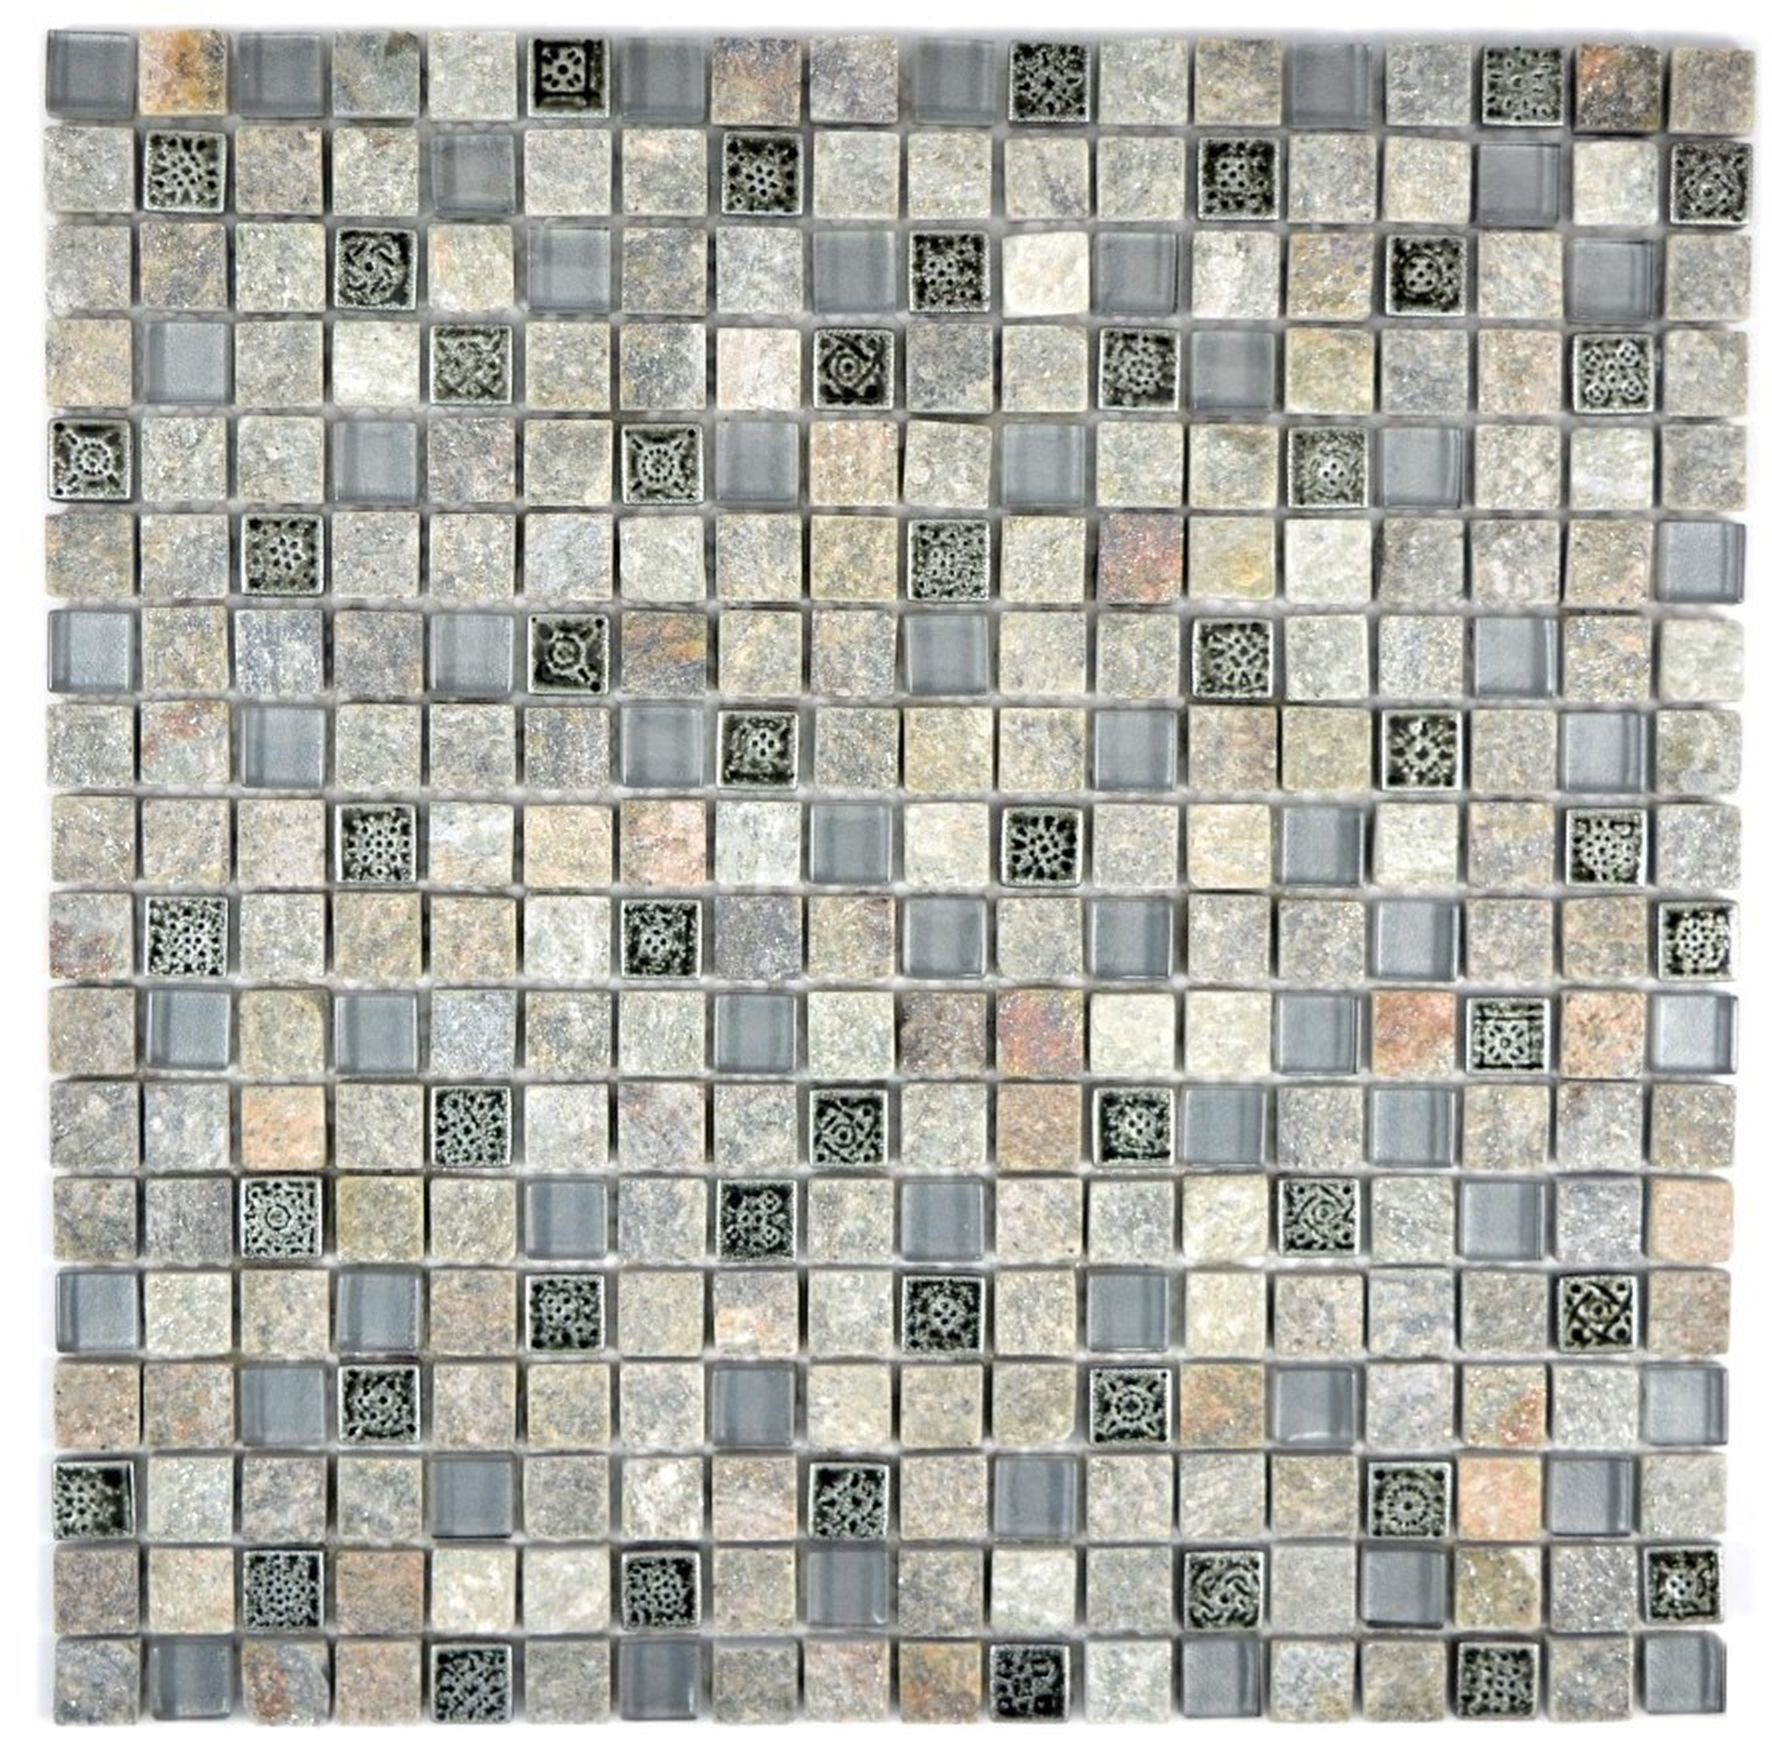 Mosani Mosaikfliesen Quadratisches Glasmosaik Naturstein Resin Mosaikfliesen grau matt